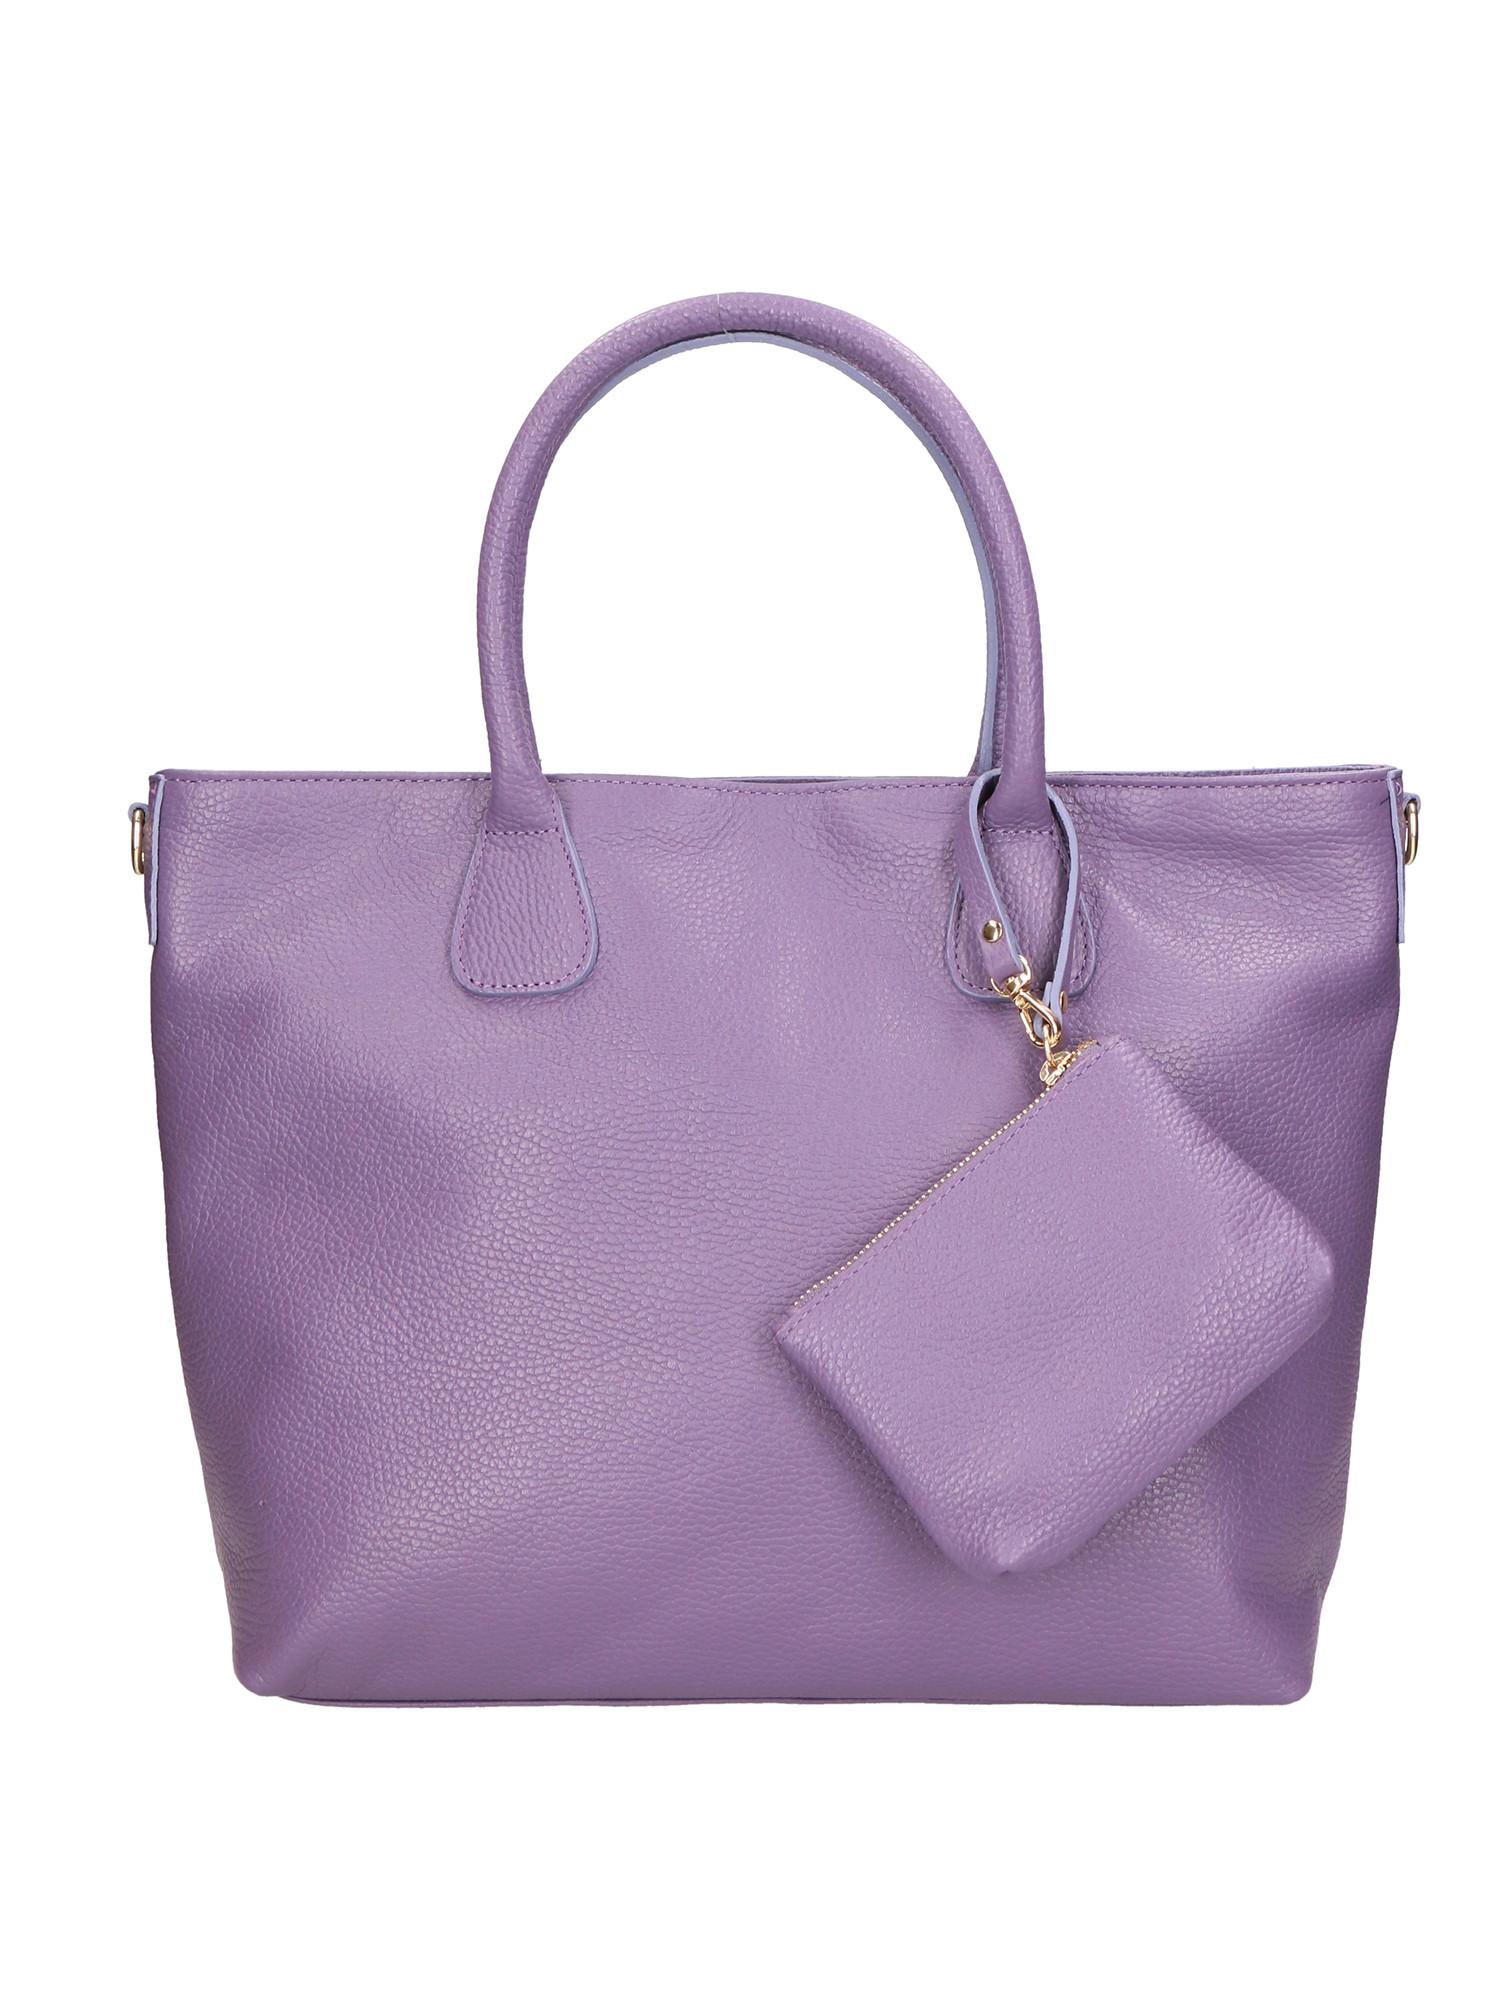 Handtasche Damen Violett ONE SIZE von Gave Lux